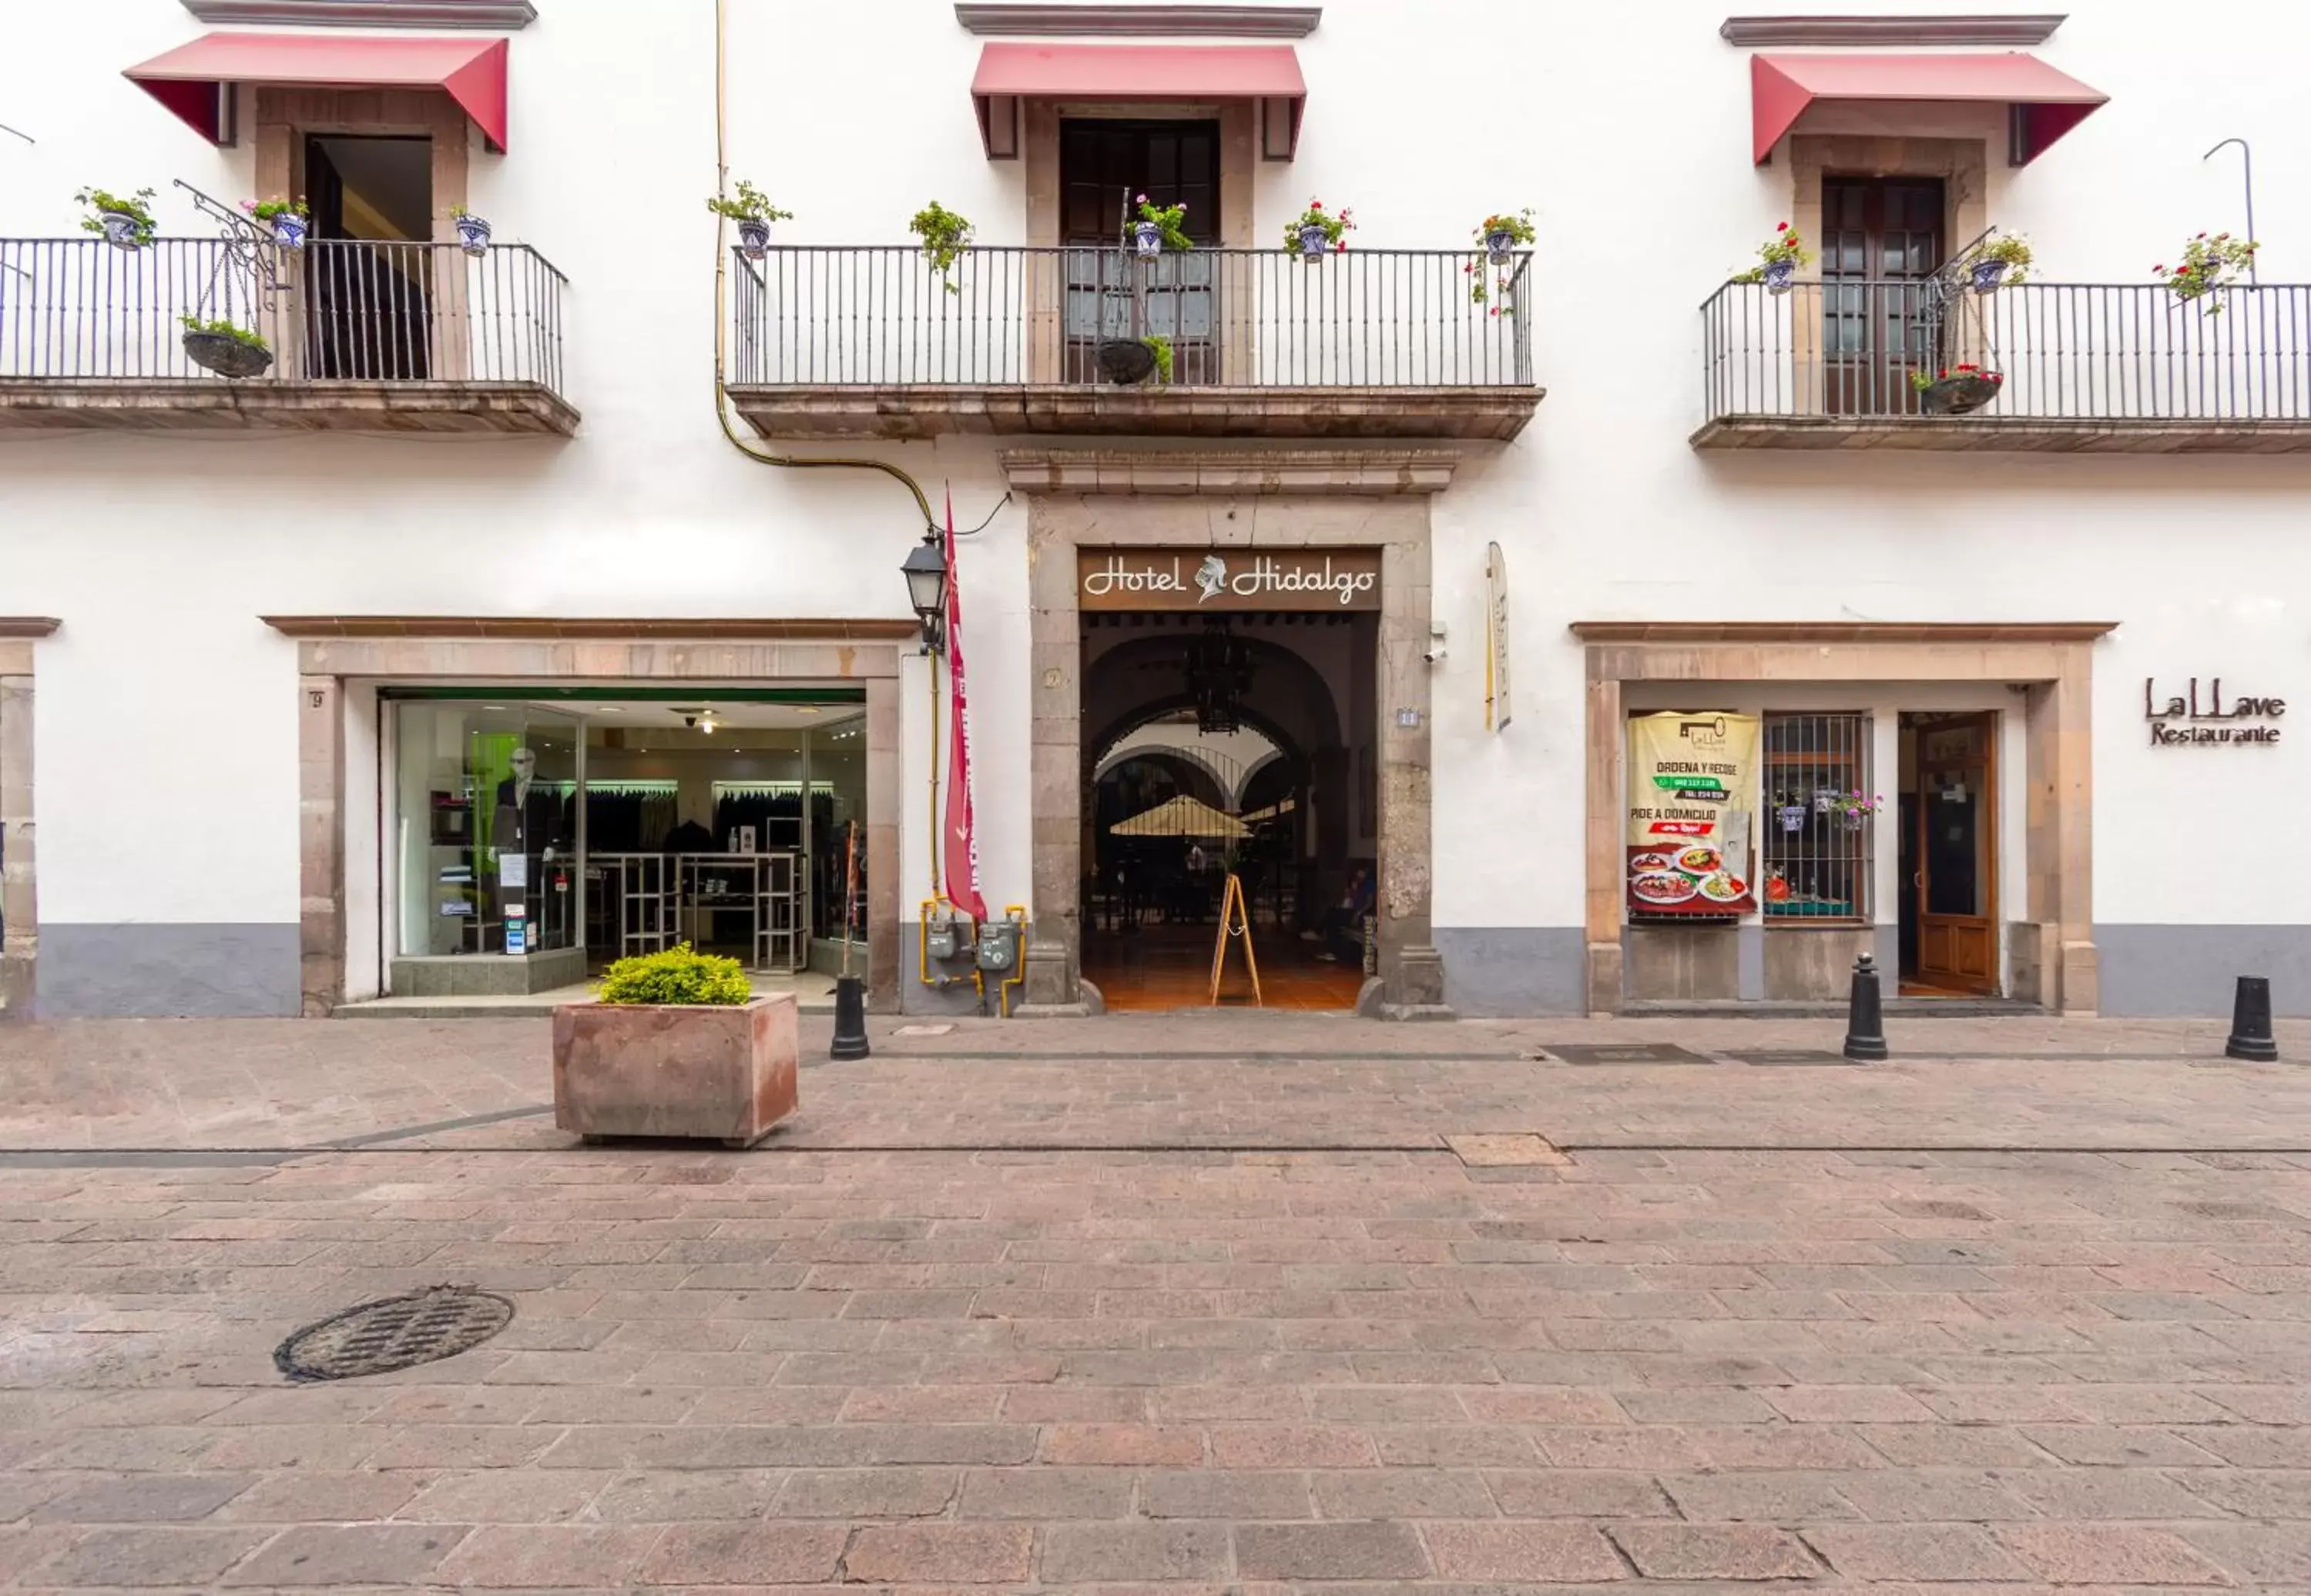 Facade/entrance in Hotel Hidalgo